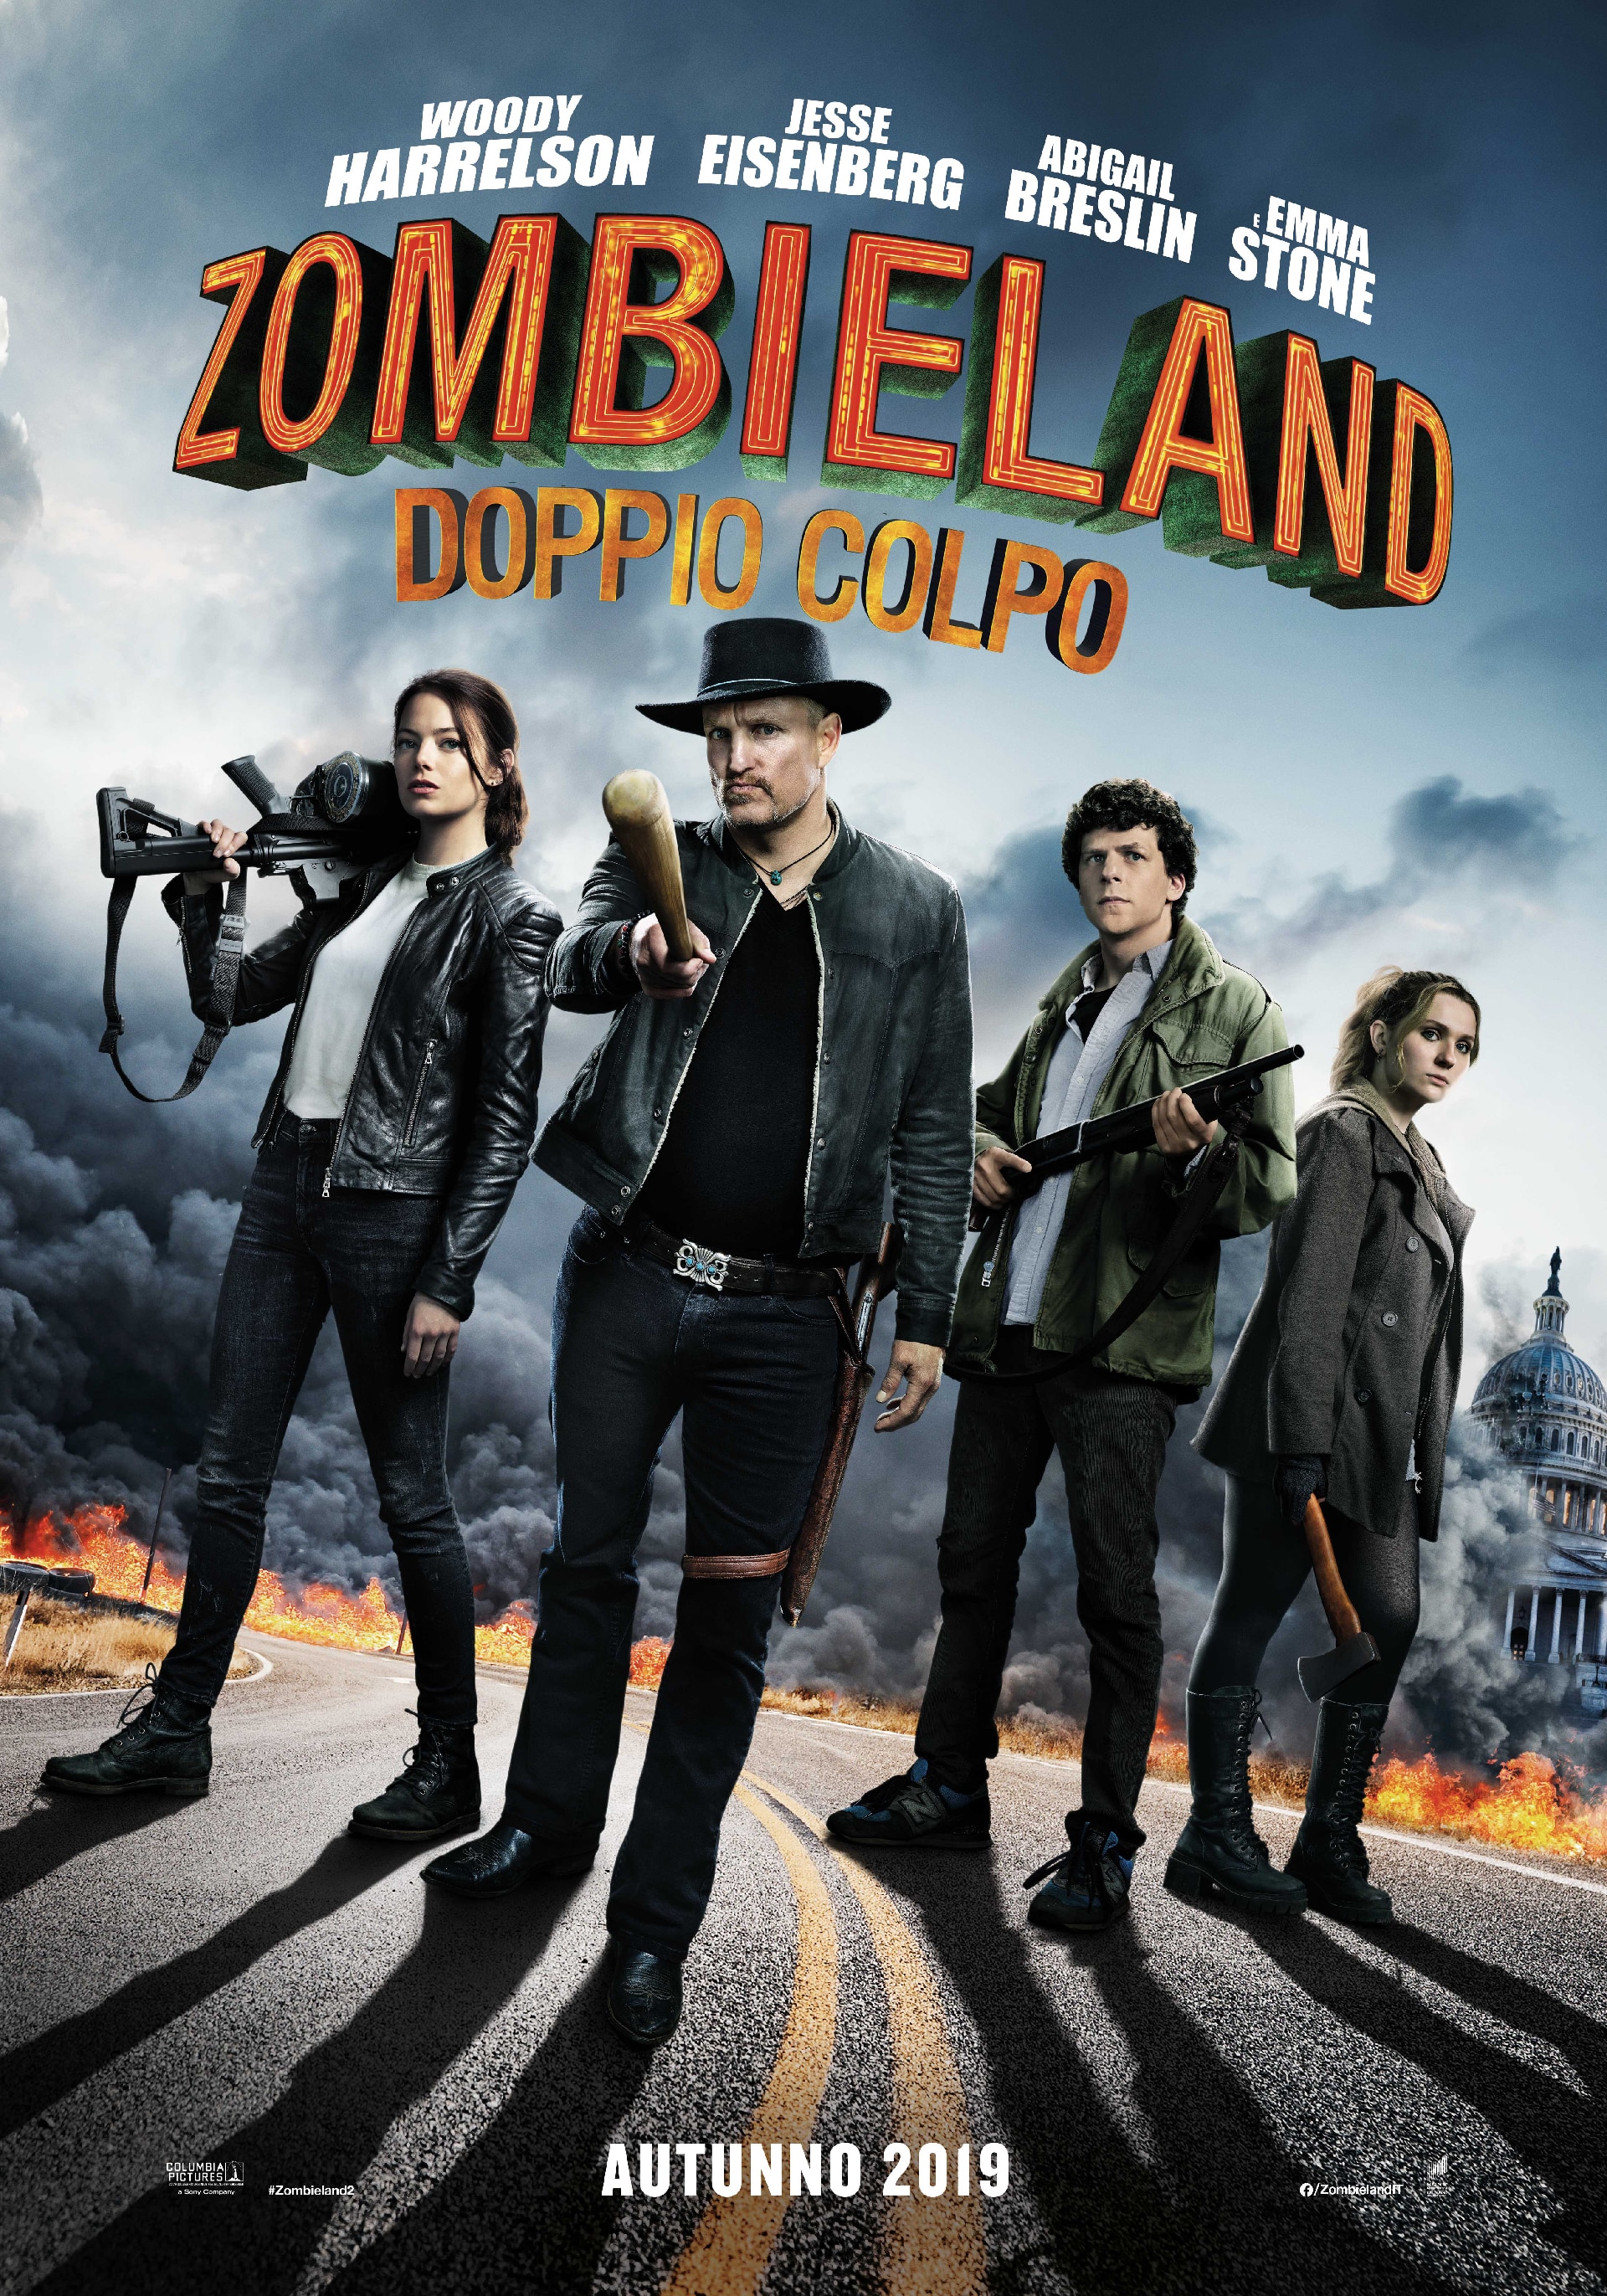 Zombieland: Doppio Colpo, cinematographe.it